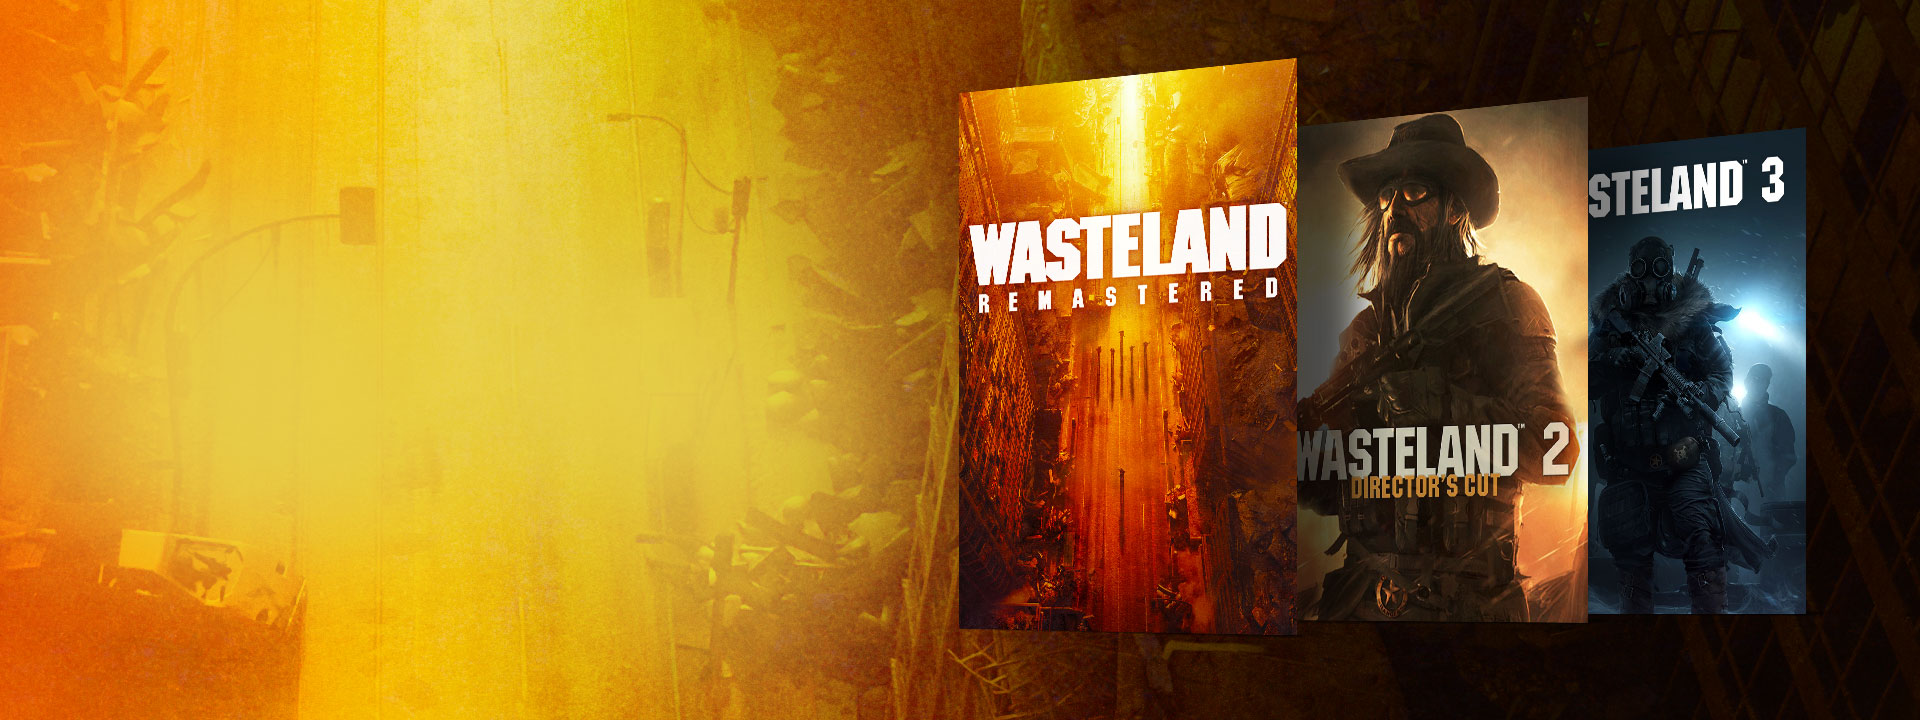 Обложки Wasteland Remastered, Wasteland 2 Director’s Cut и Wasteland 3. Фон с изображением покинутой улицы в желтых и оранжевых тонах